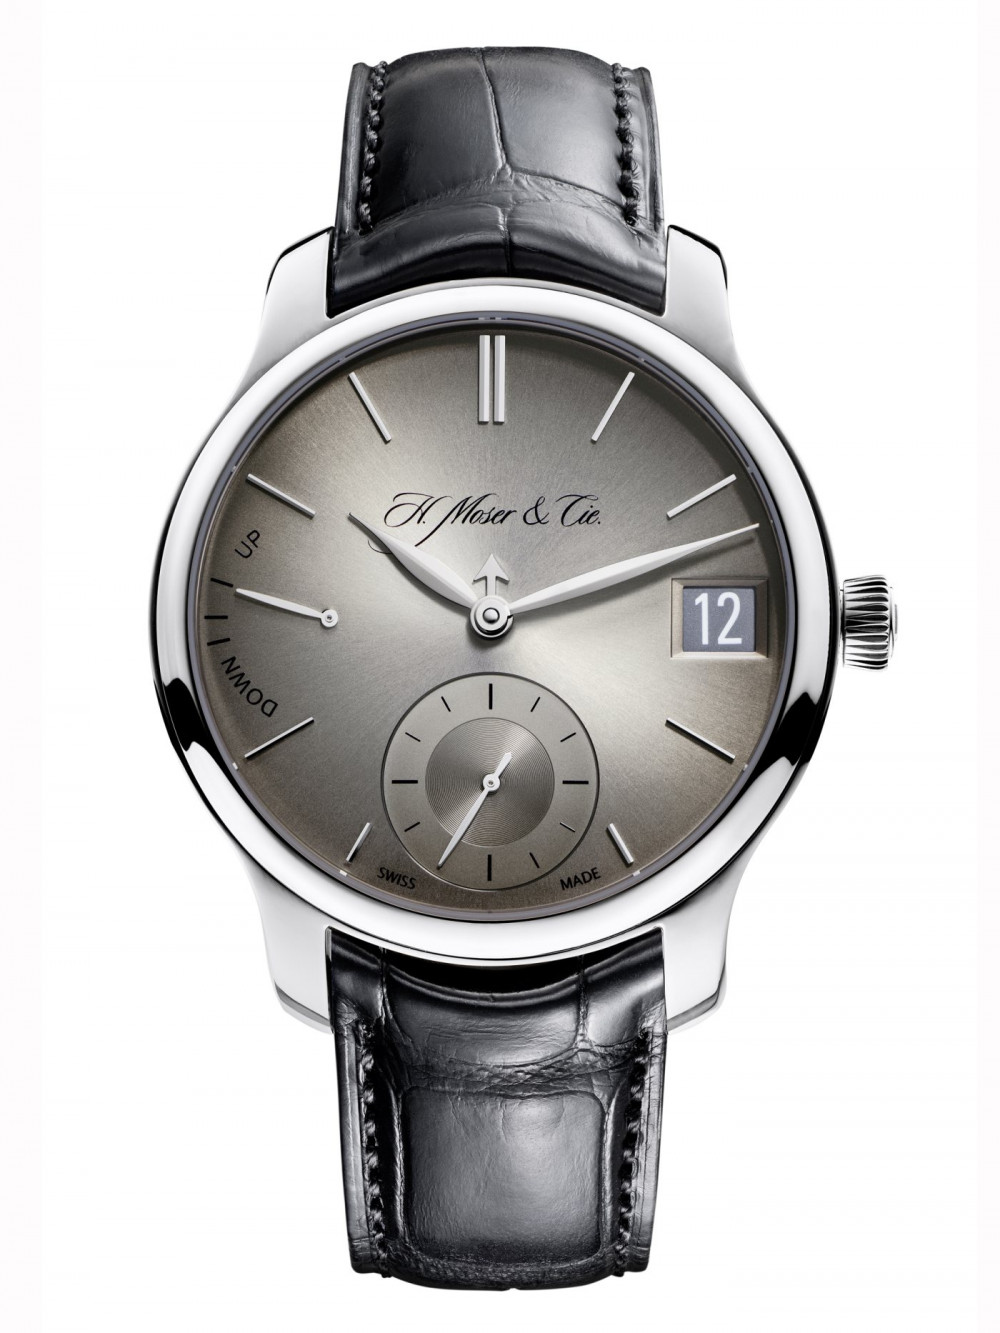 Zegarek firmy H. Moser & Cie, model Endeavour Perpetual Calendar Weissgold Fumé